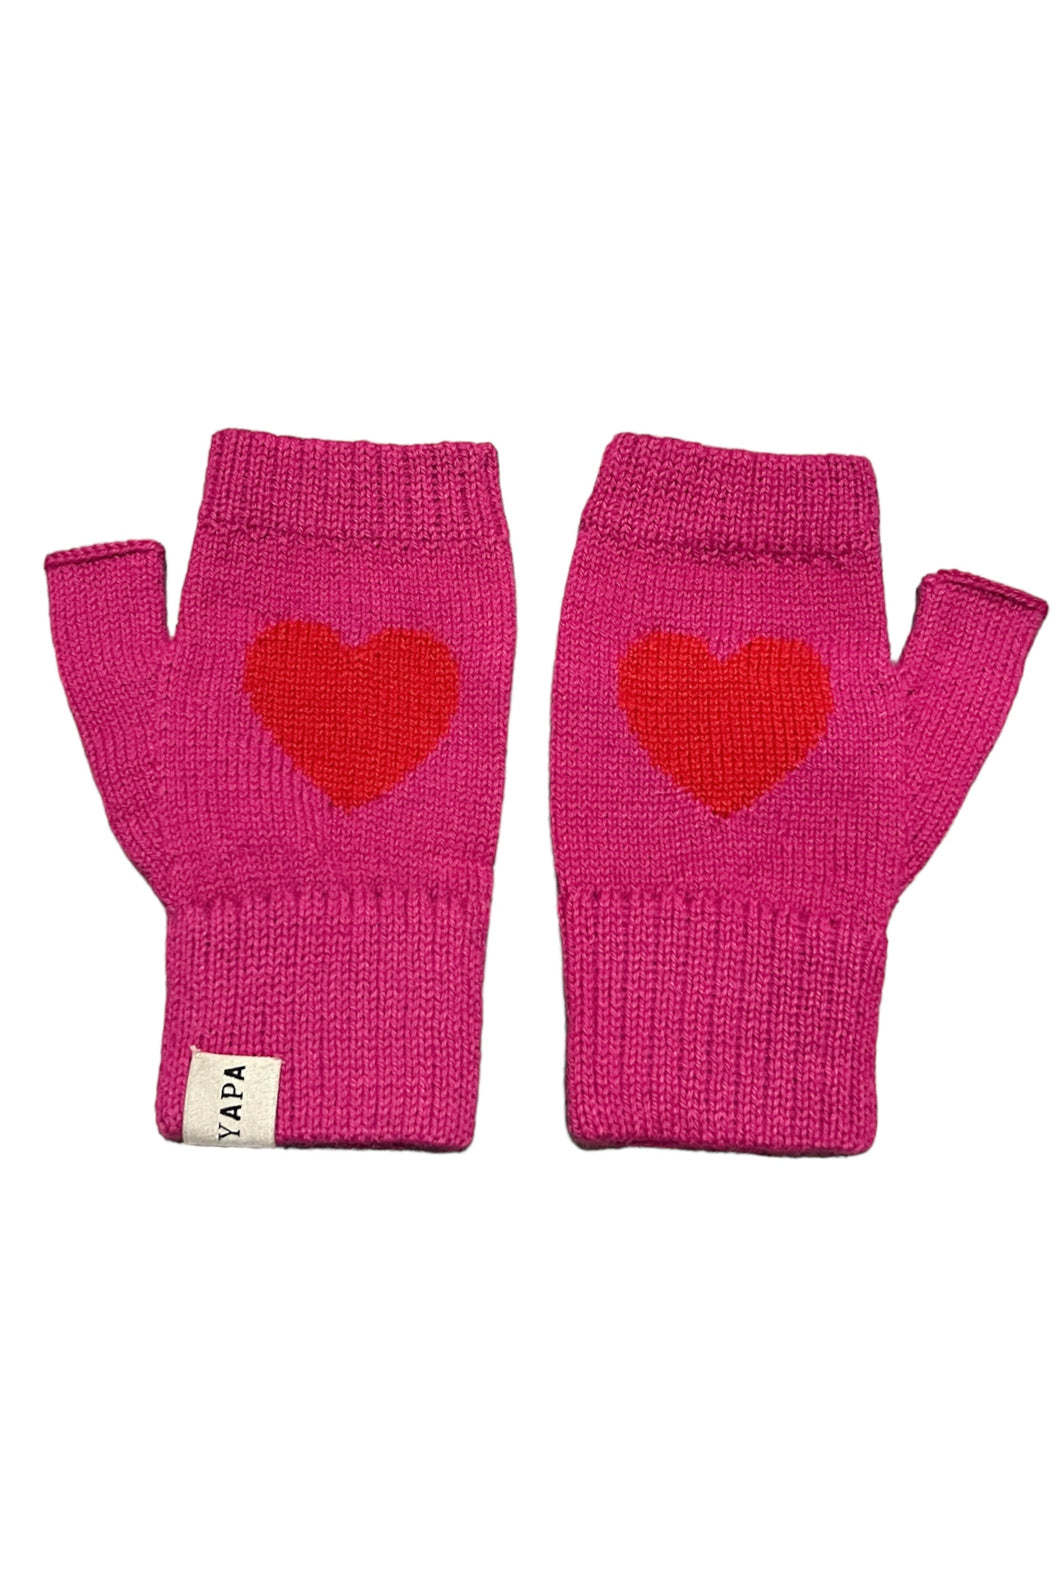 heart-mittens-alpaca-wool-hot-pink